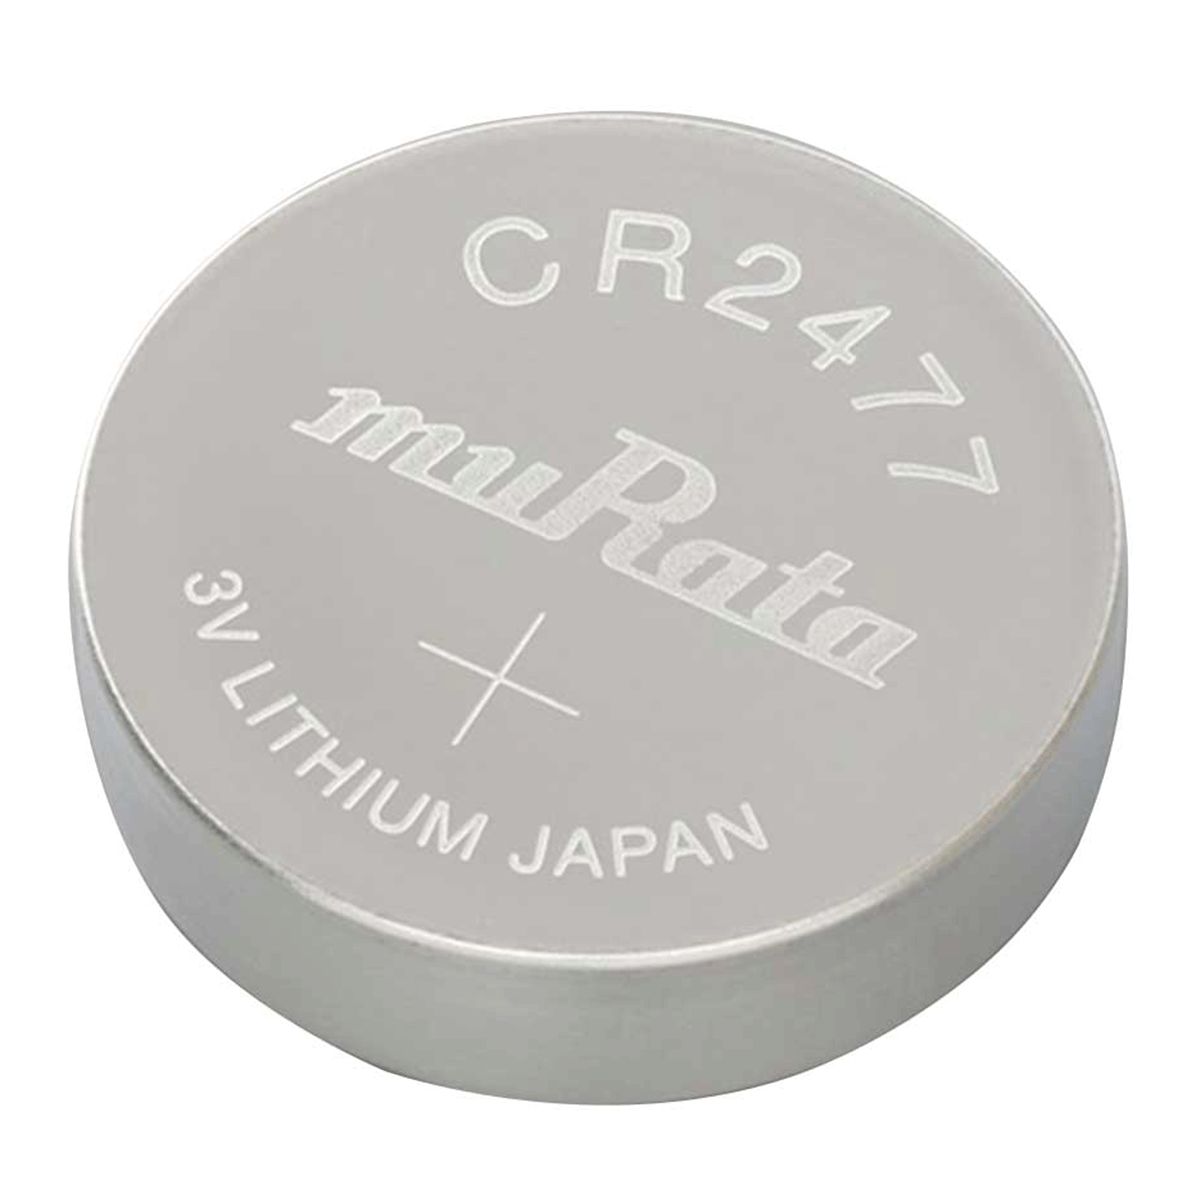 Panasonic CR2477 3V Litium Coin Cell Battery : Health & Household 